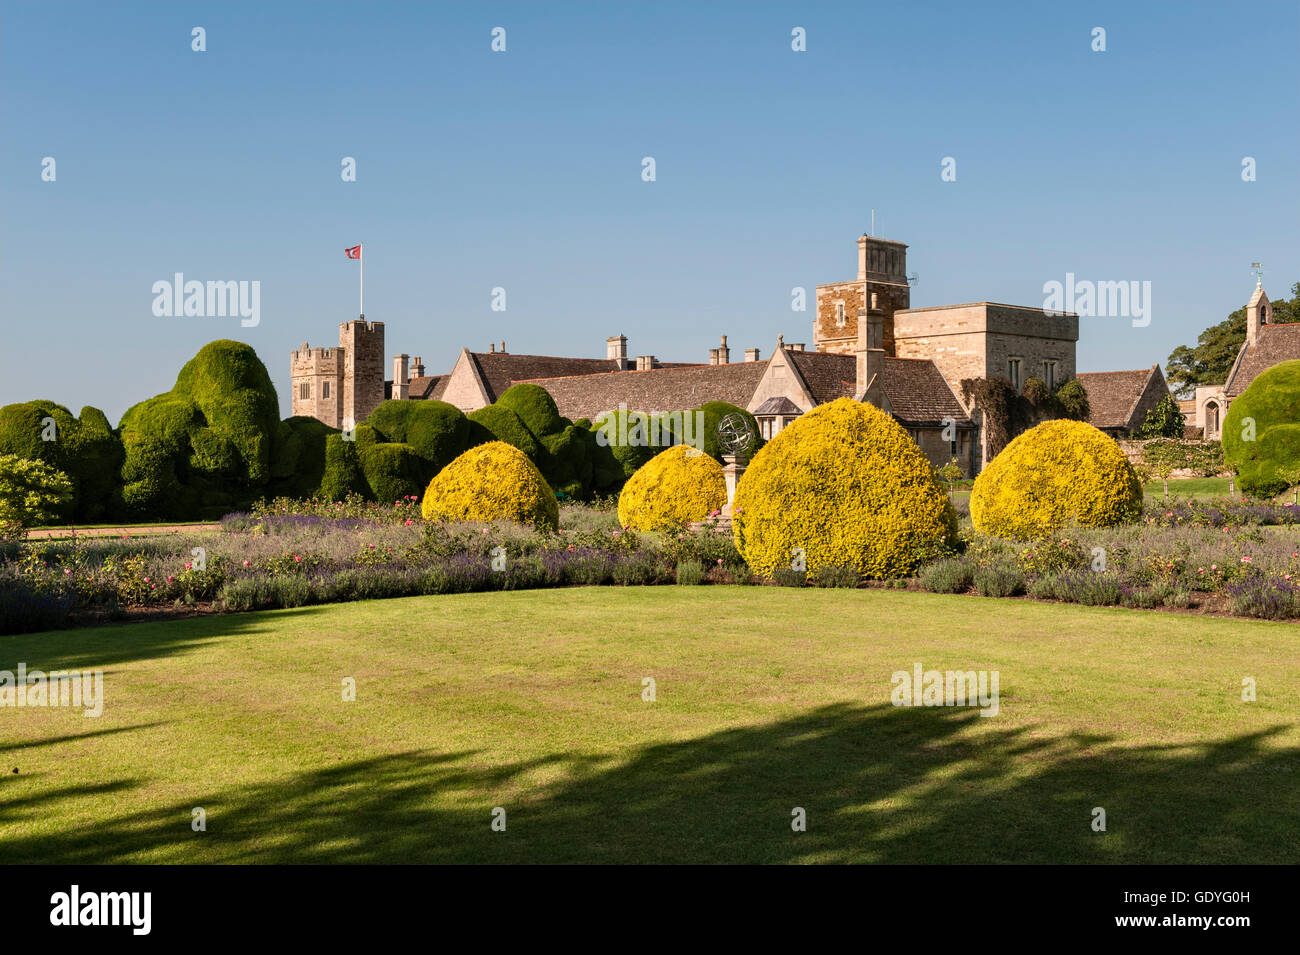 Le château de Rockingham, Corby, Northamptonshire, Angleterre. La procédure formelle 17c 'jardin' avec l'if de 400 ans 'Elephant' Derrière de couverture Banque D'Images